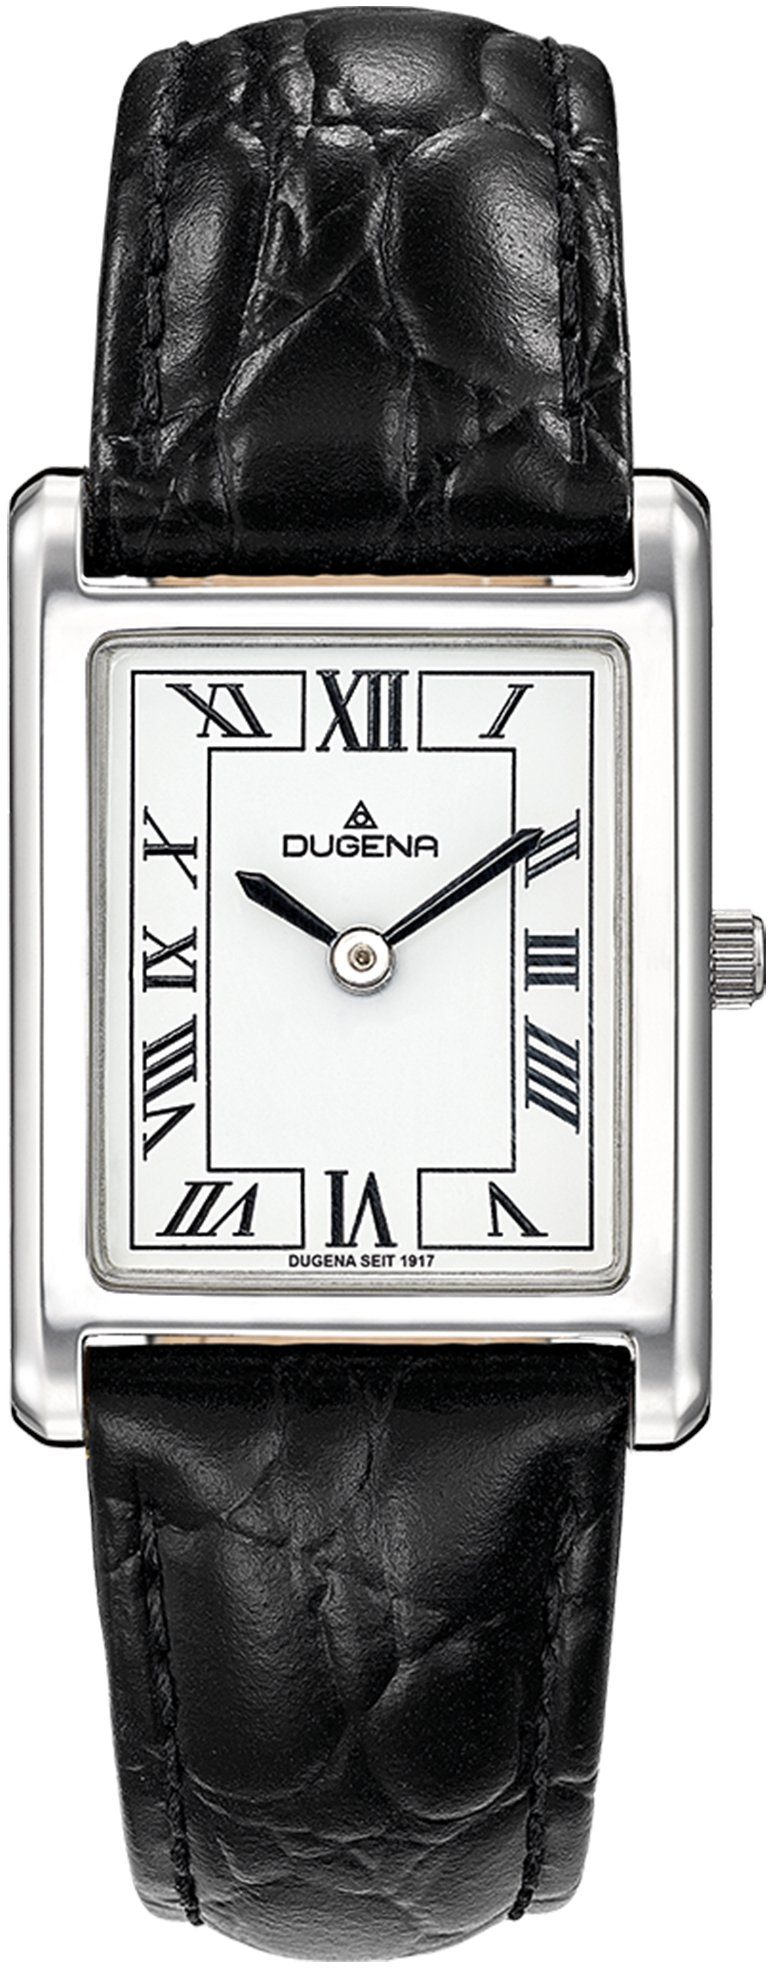 Dugena Quarzuhr Quadra Classica, 4460700-1, Armbanduhr, Damenuhr